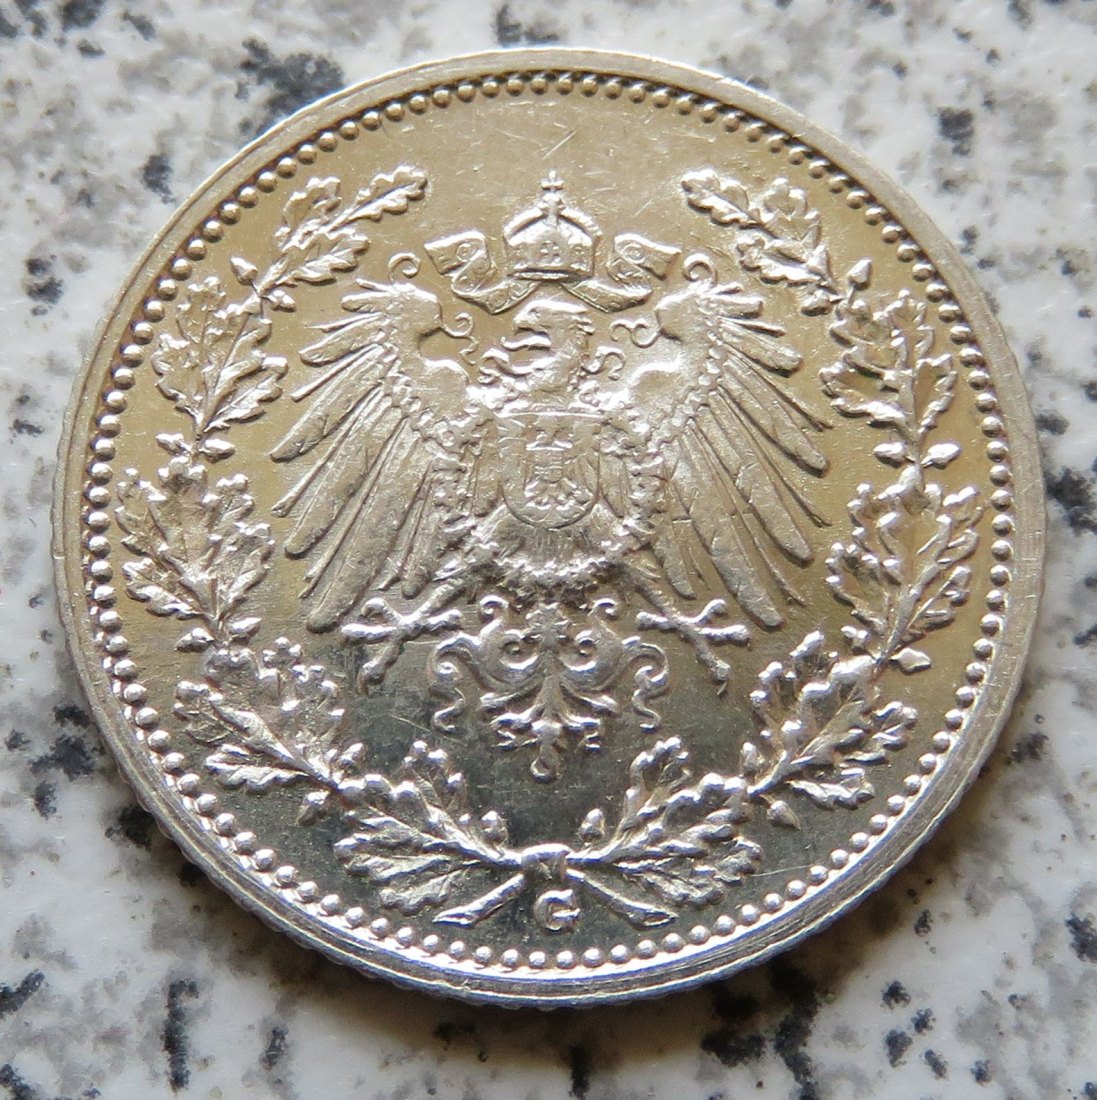  Kaiserreich 1/2 Mark 1913 G, Erhaltung   